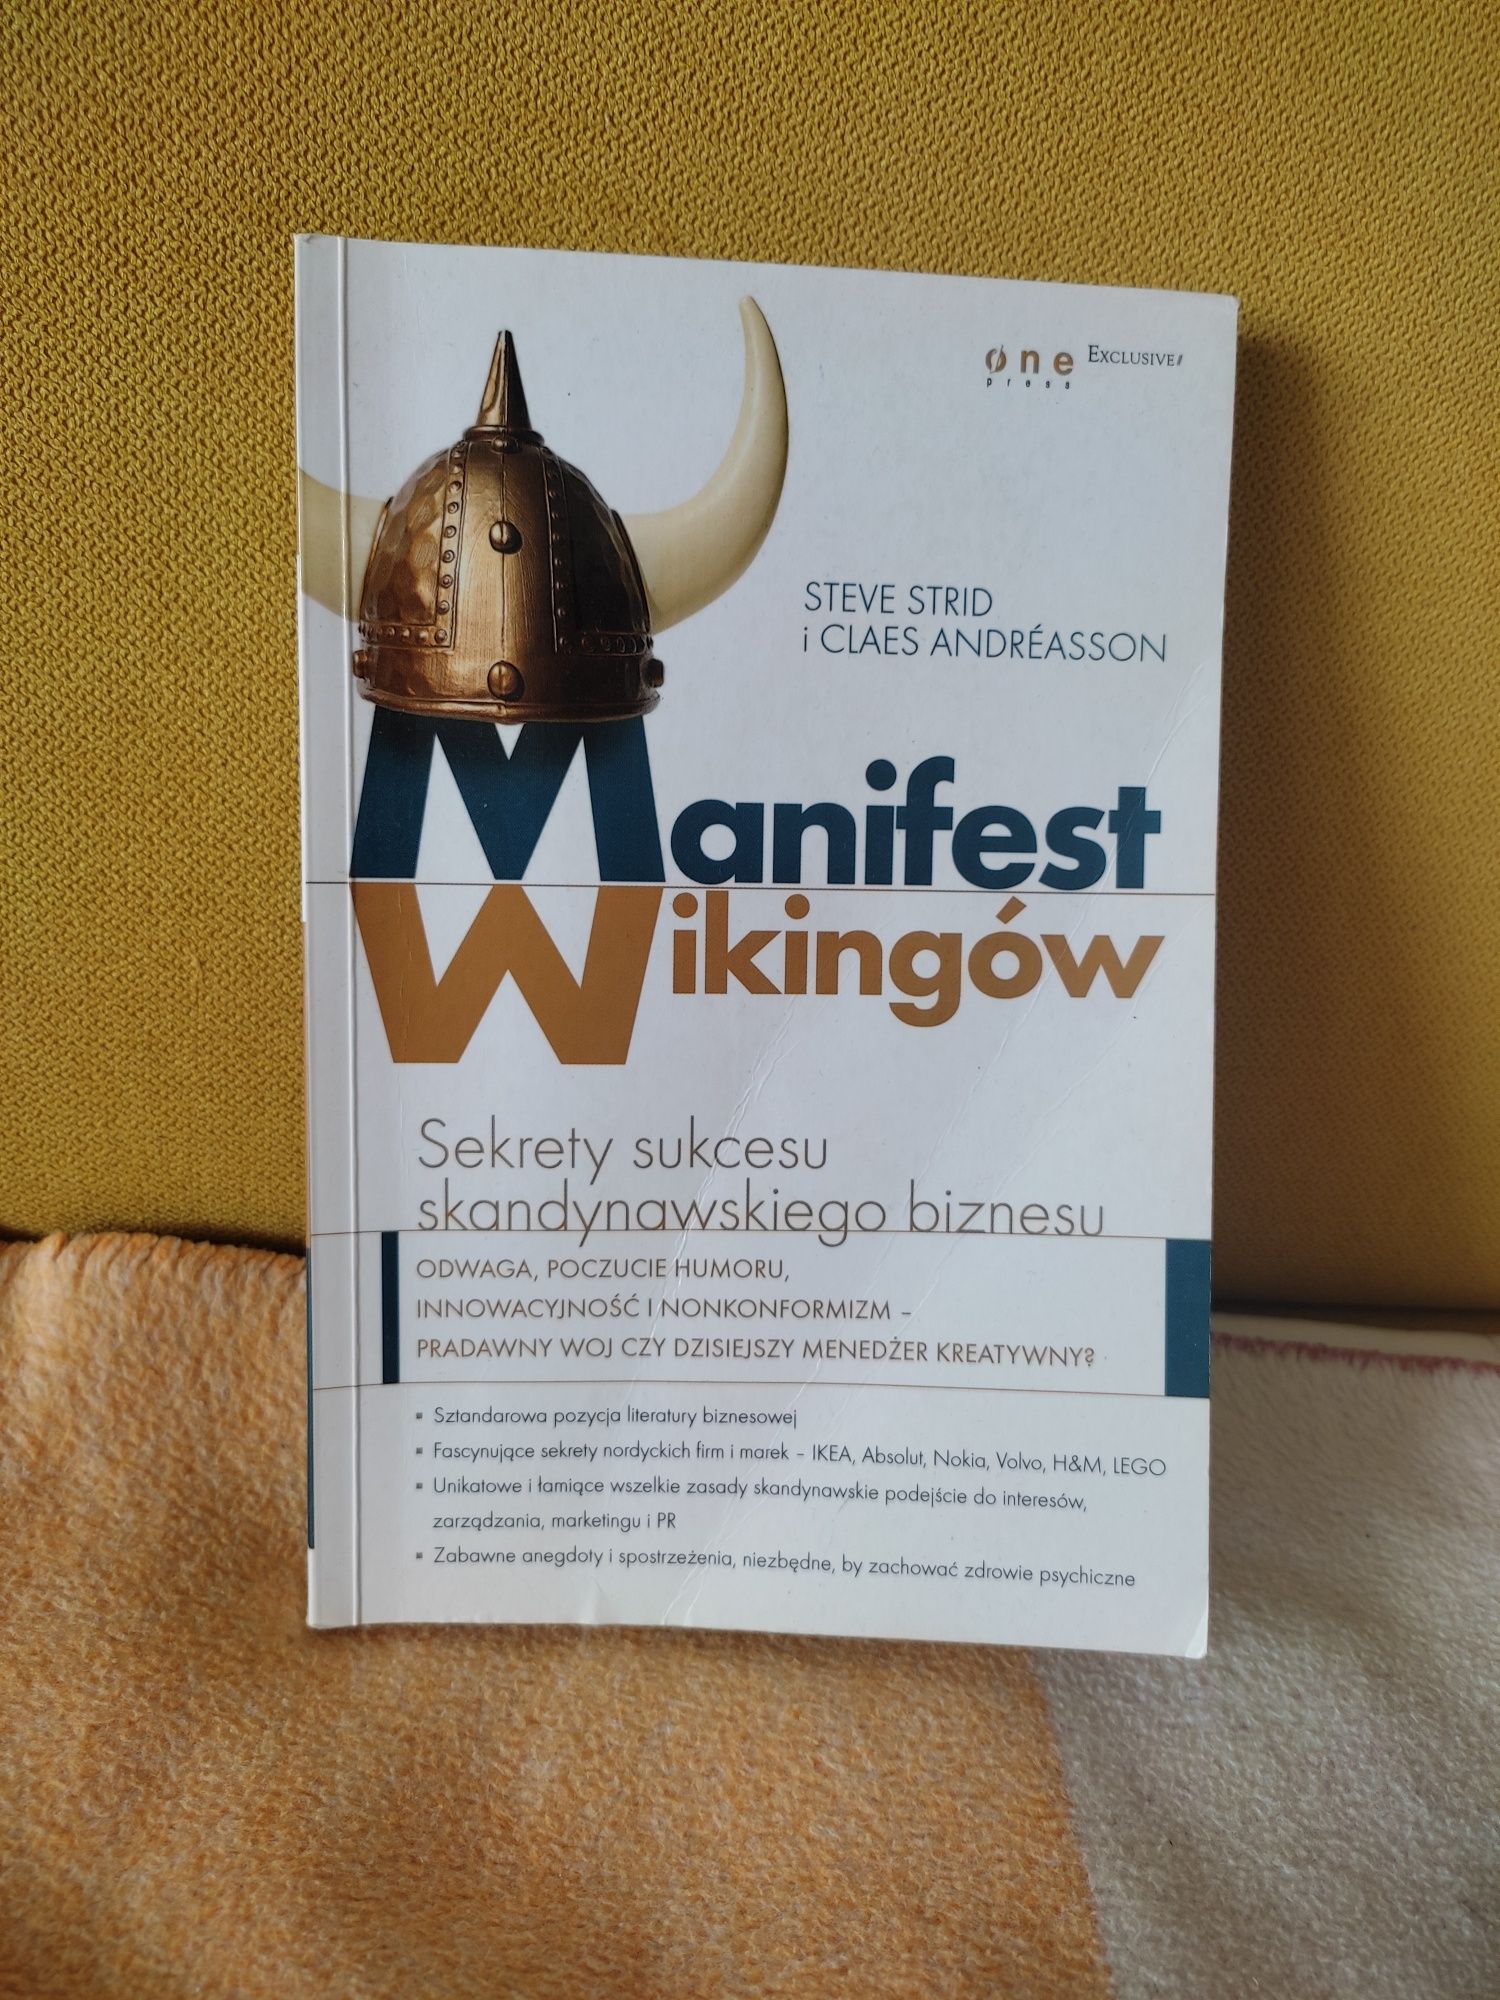 Książka "Manifest wikingów. Sekrety sukcesu skandynawskiego biznesu"